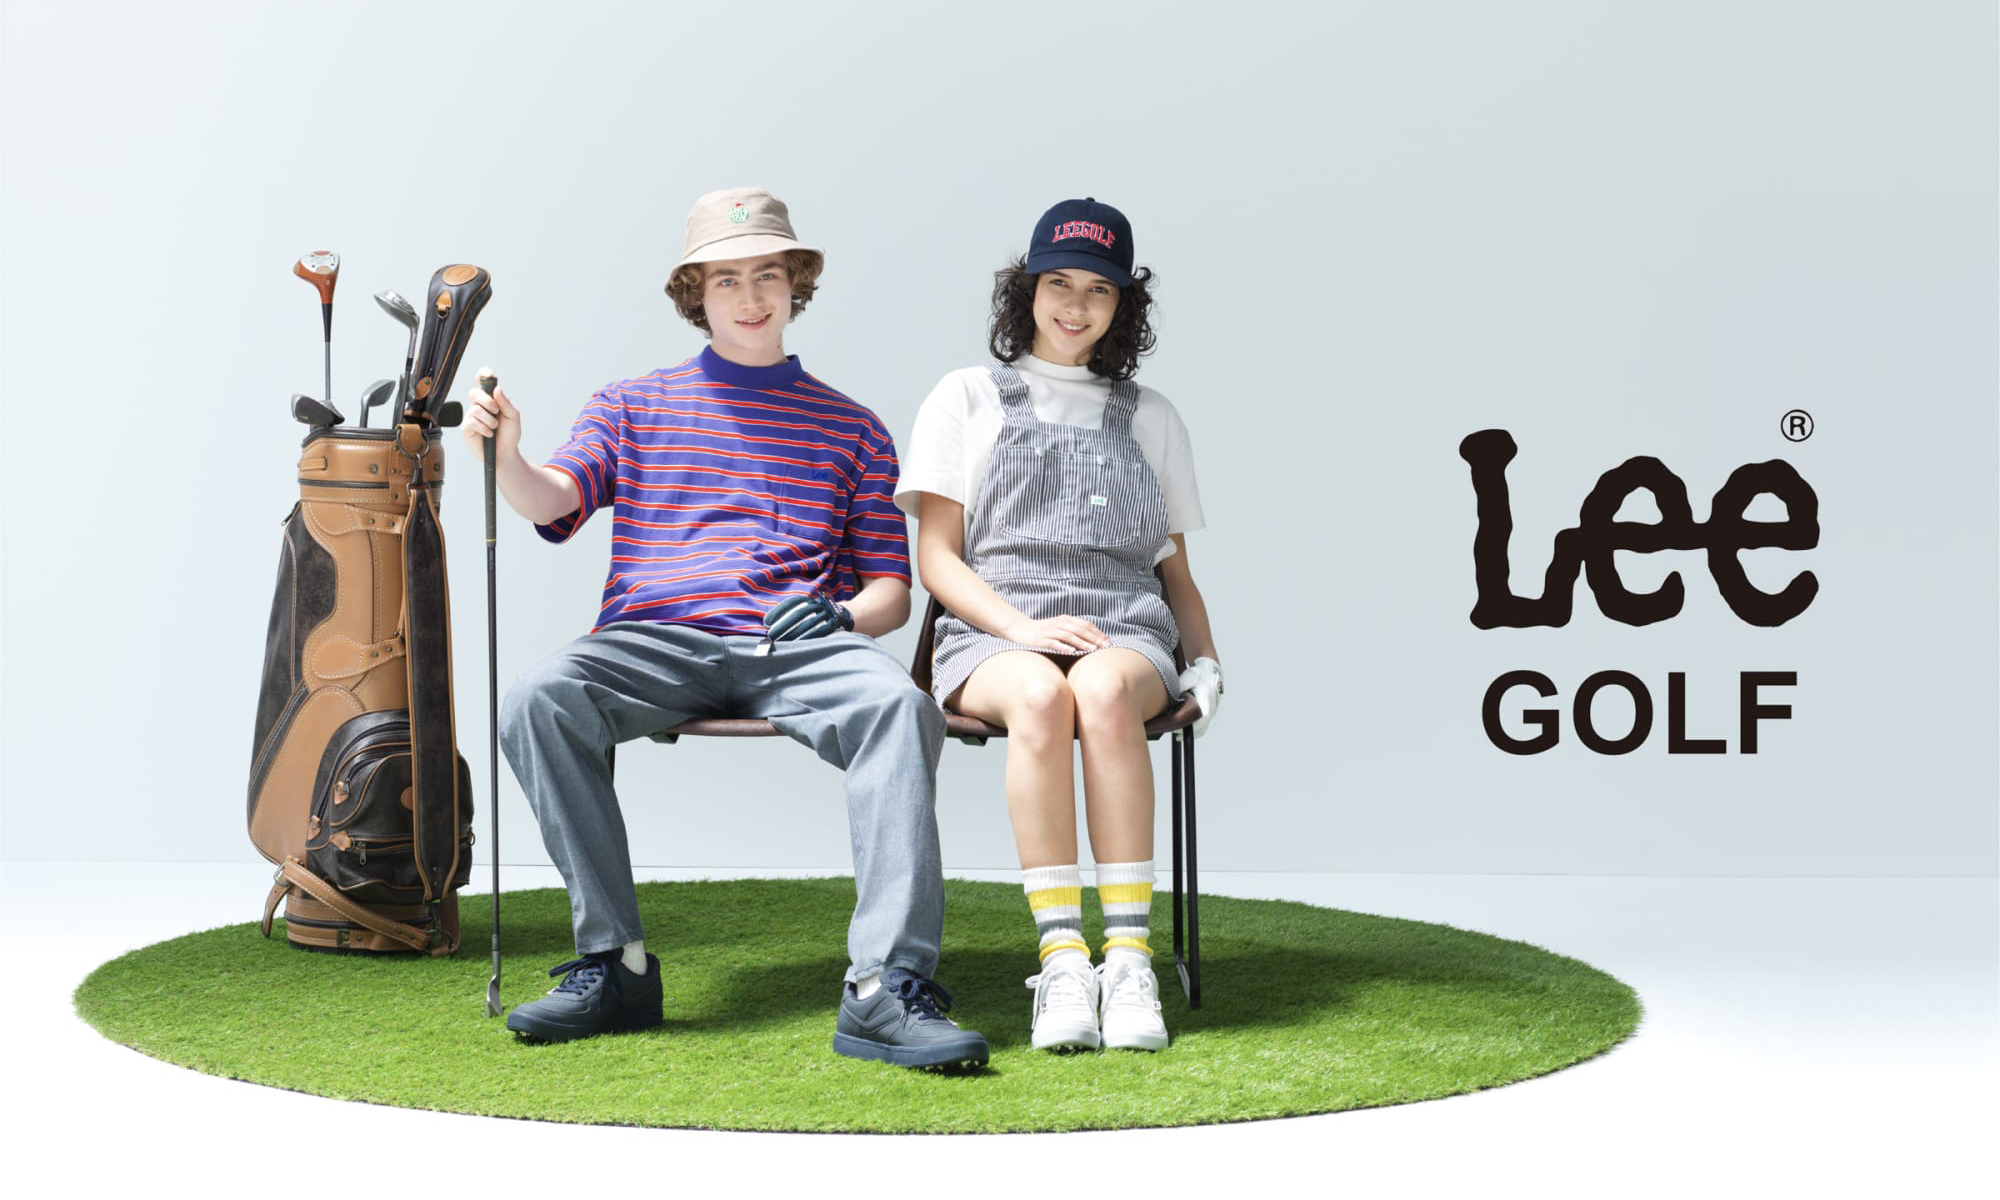 Lee 推出高尔夫服饰系列「Lee GOLF」